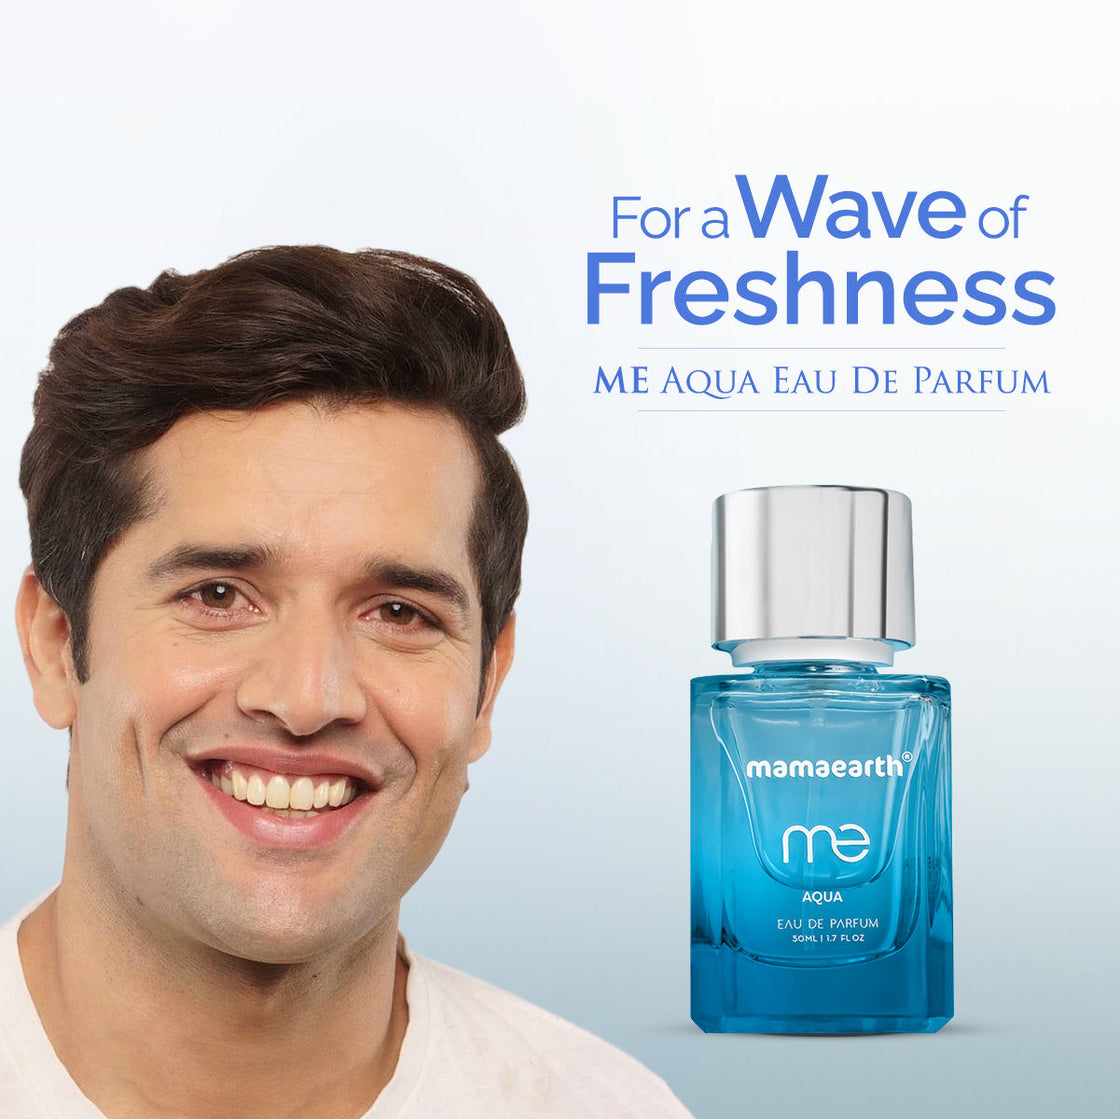 Mamaearth Me Aqua Eau De Parfum For A Wave Of Freshness-6